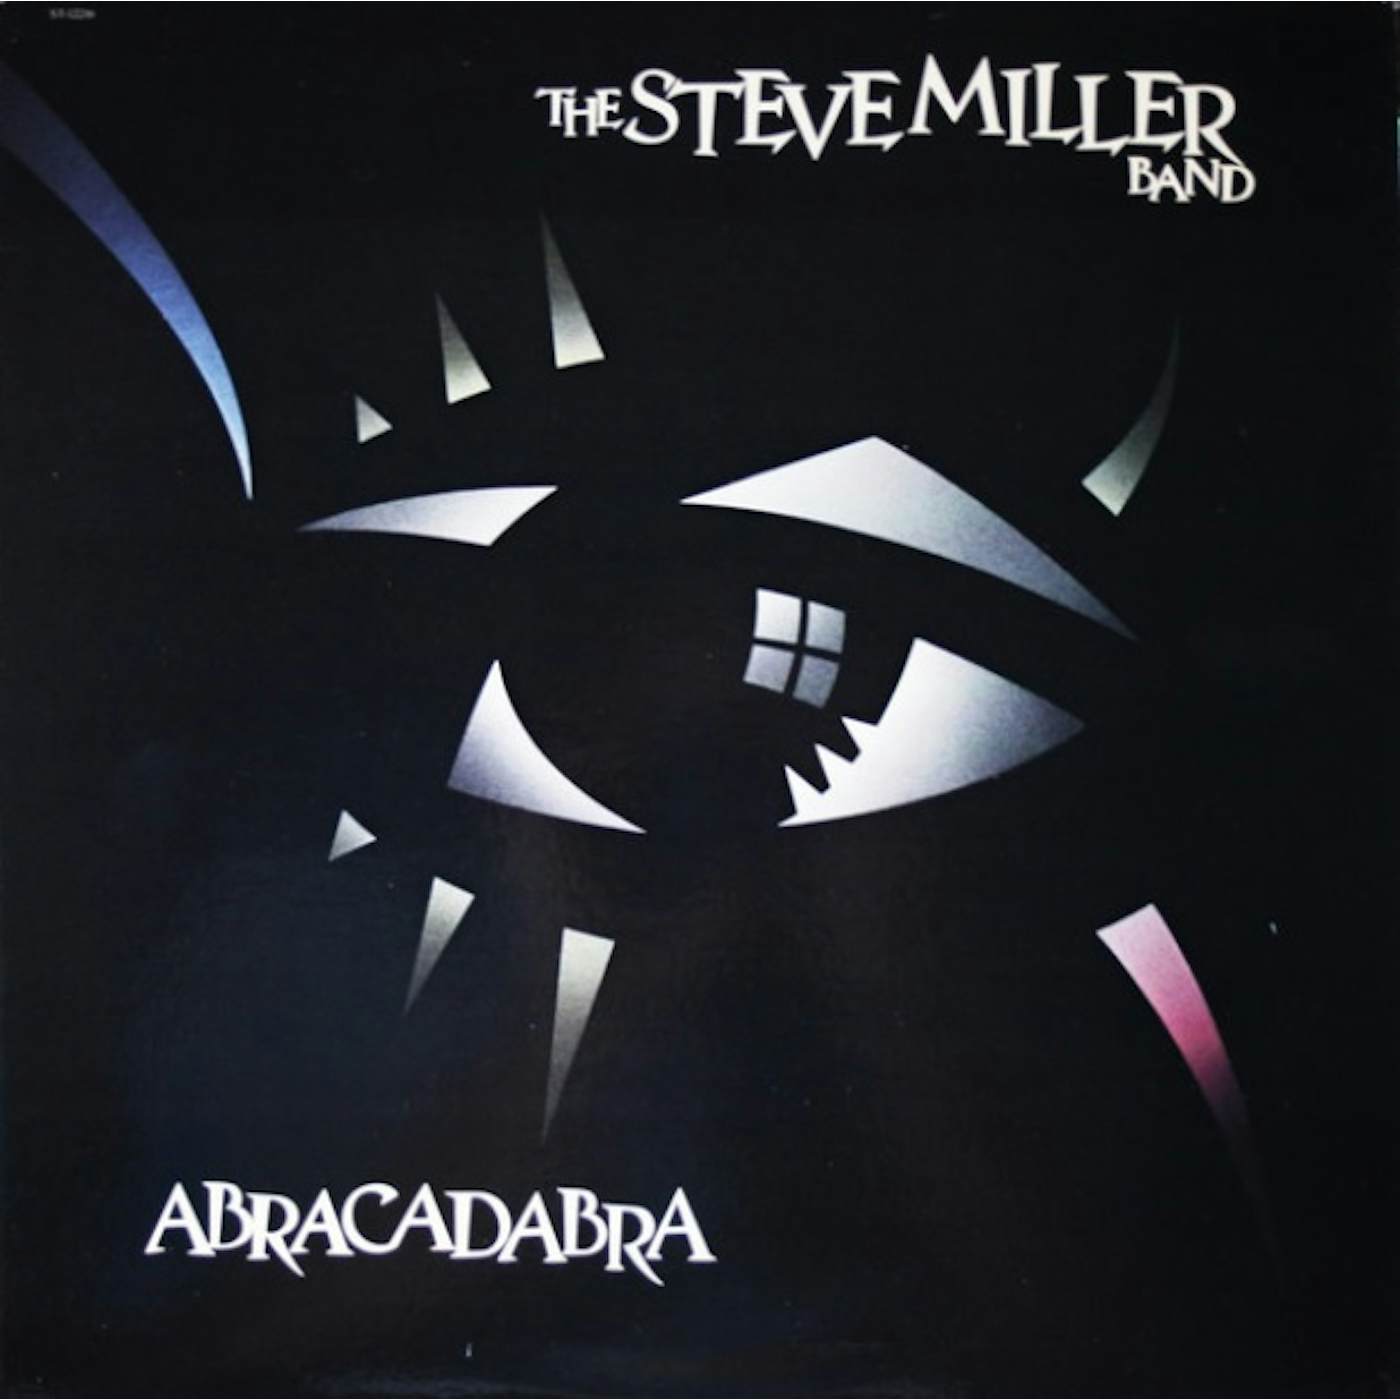 Steve Miller Band Abracadabra Vinyl Record